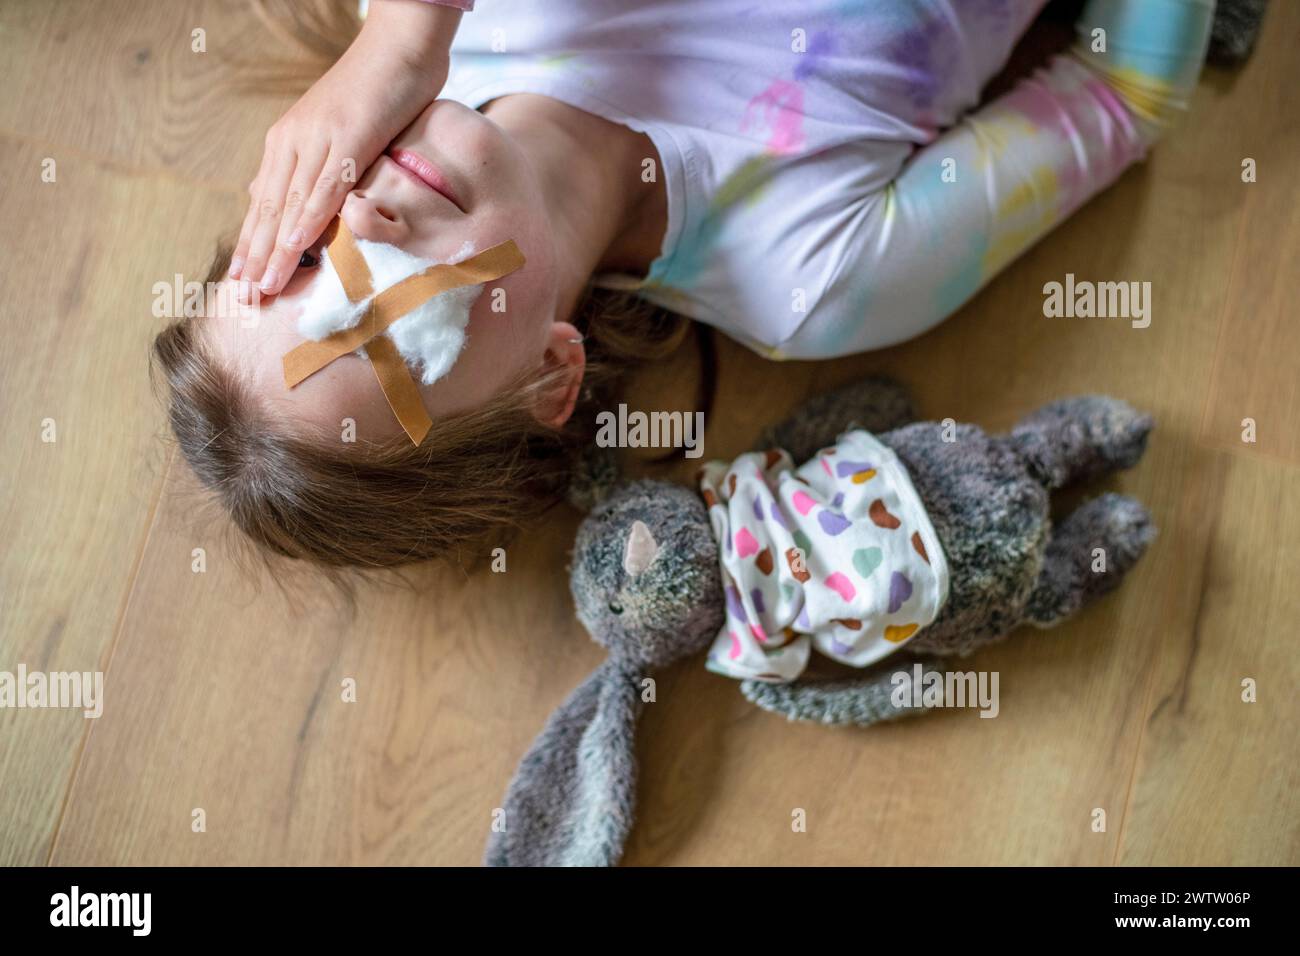 Une jeune fille allongée sur le sol reposant avec son lapin en peluche à ses côtés, les deux semblant avoir besoin d'une TLC. Banque D'Images